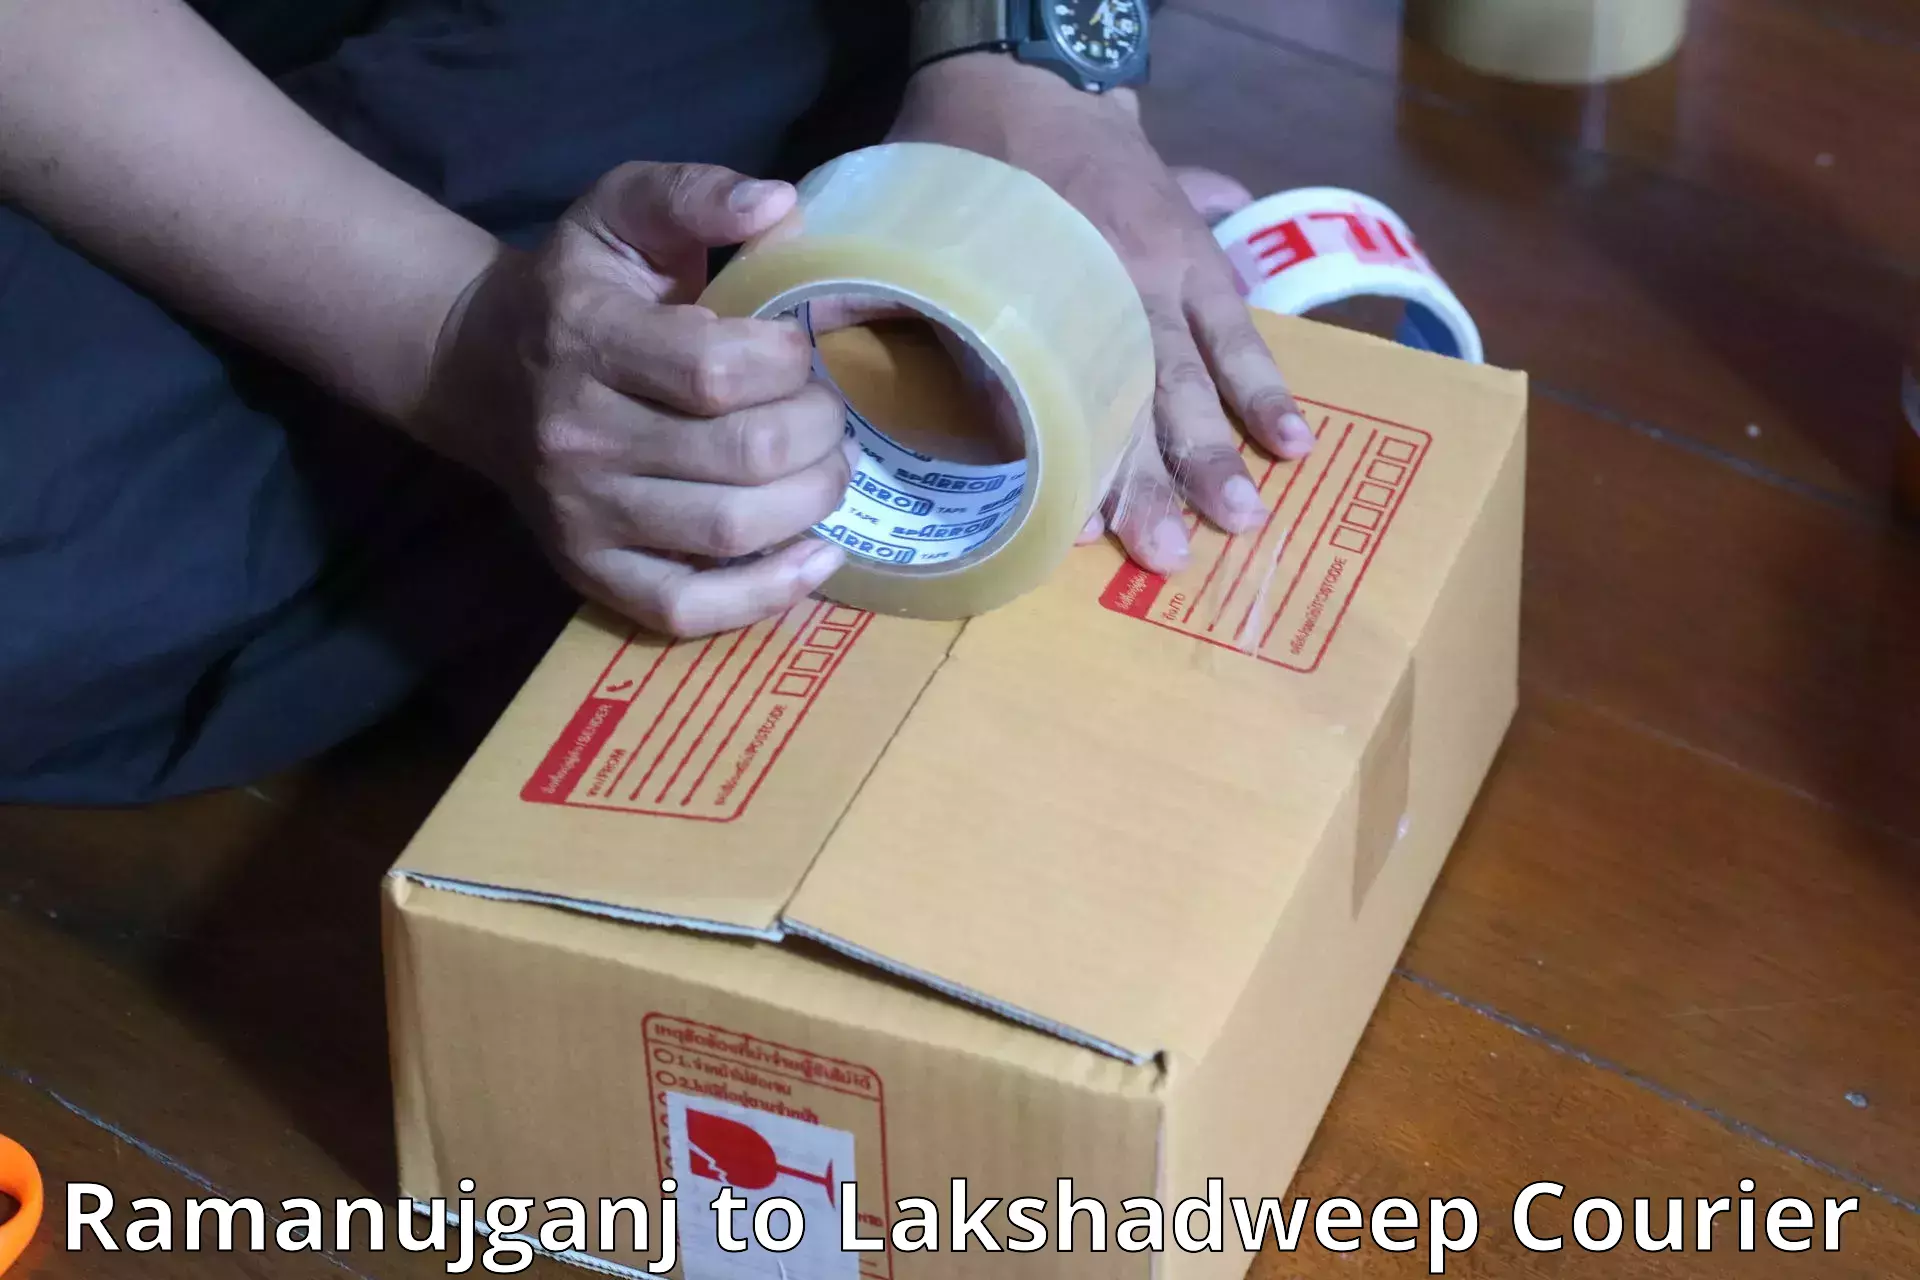 Baggage courier service Ramanujganj to Lakshadweep